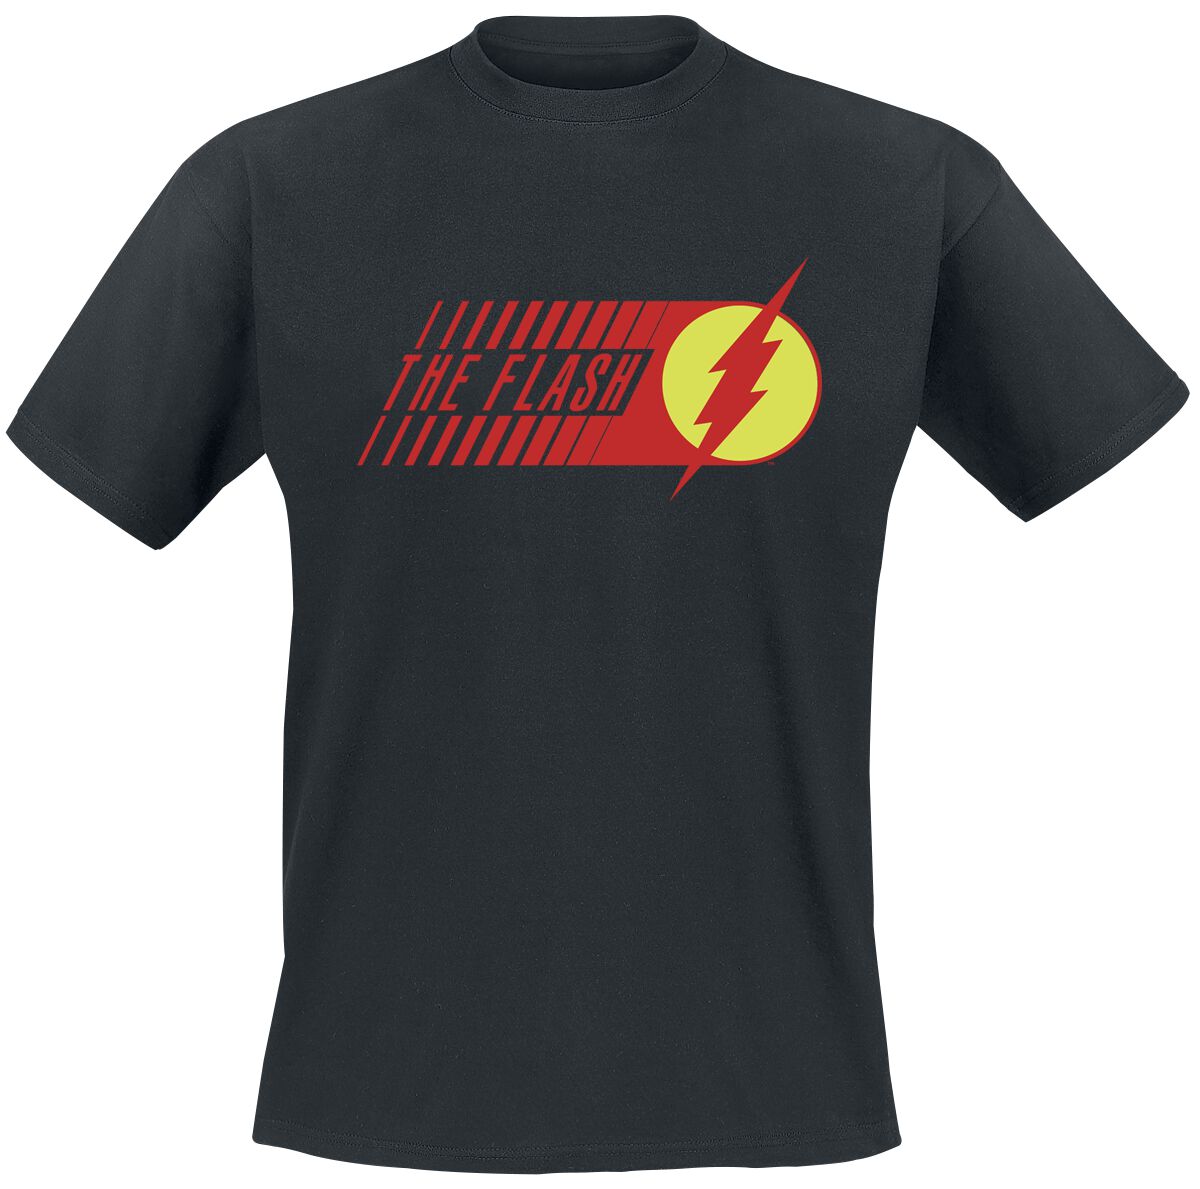 The Flash - DC Comics T-Shirt - Flash - Starlabs - S bis XXL - für Männer - Größe S - schwarz  - EMP exklusives Merchandise!